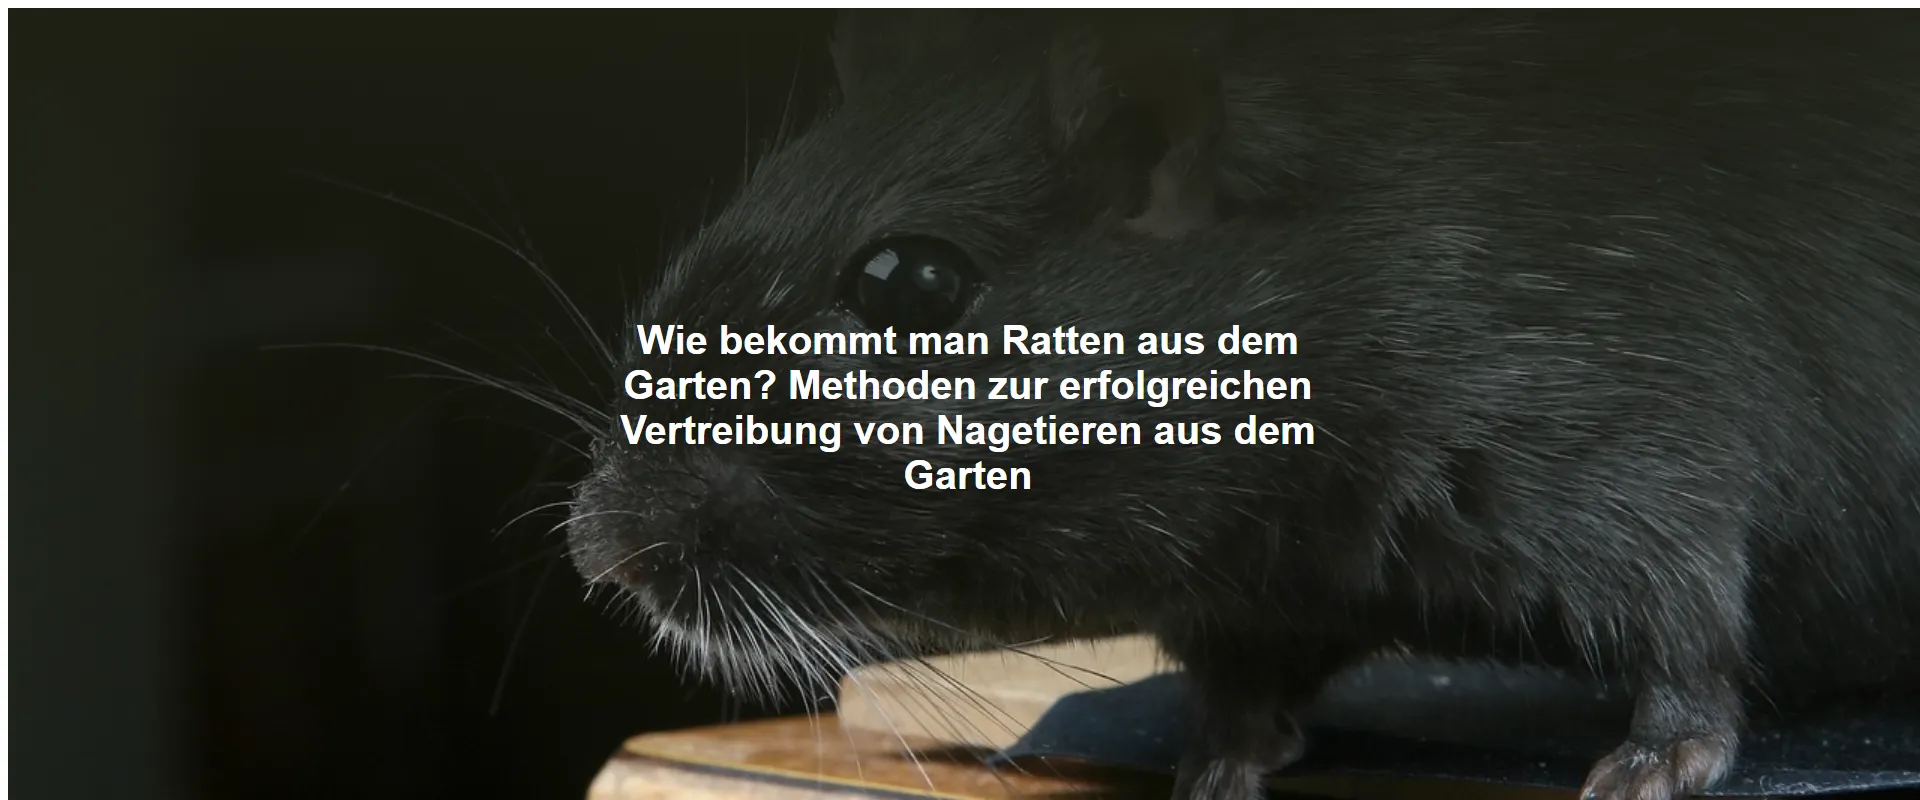 Wie bekommt man Ratten aus dem Garten? Methoden zur erfolgreichen Vertreibung von Nagetieren aus dem Garten